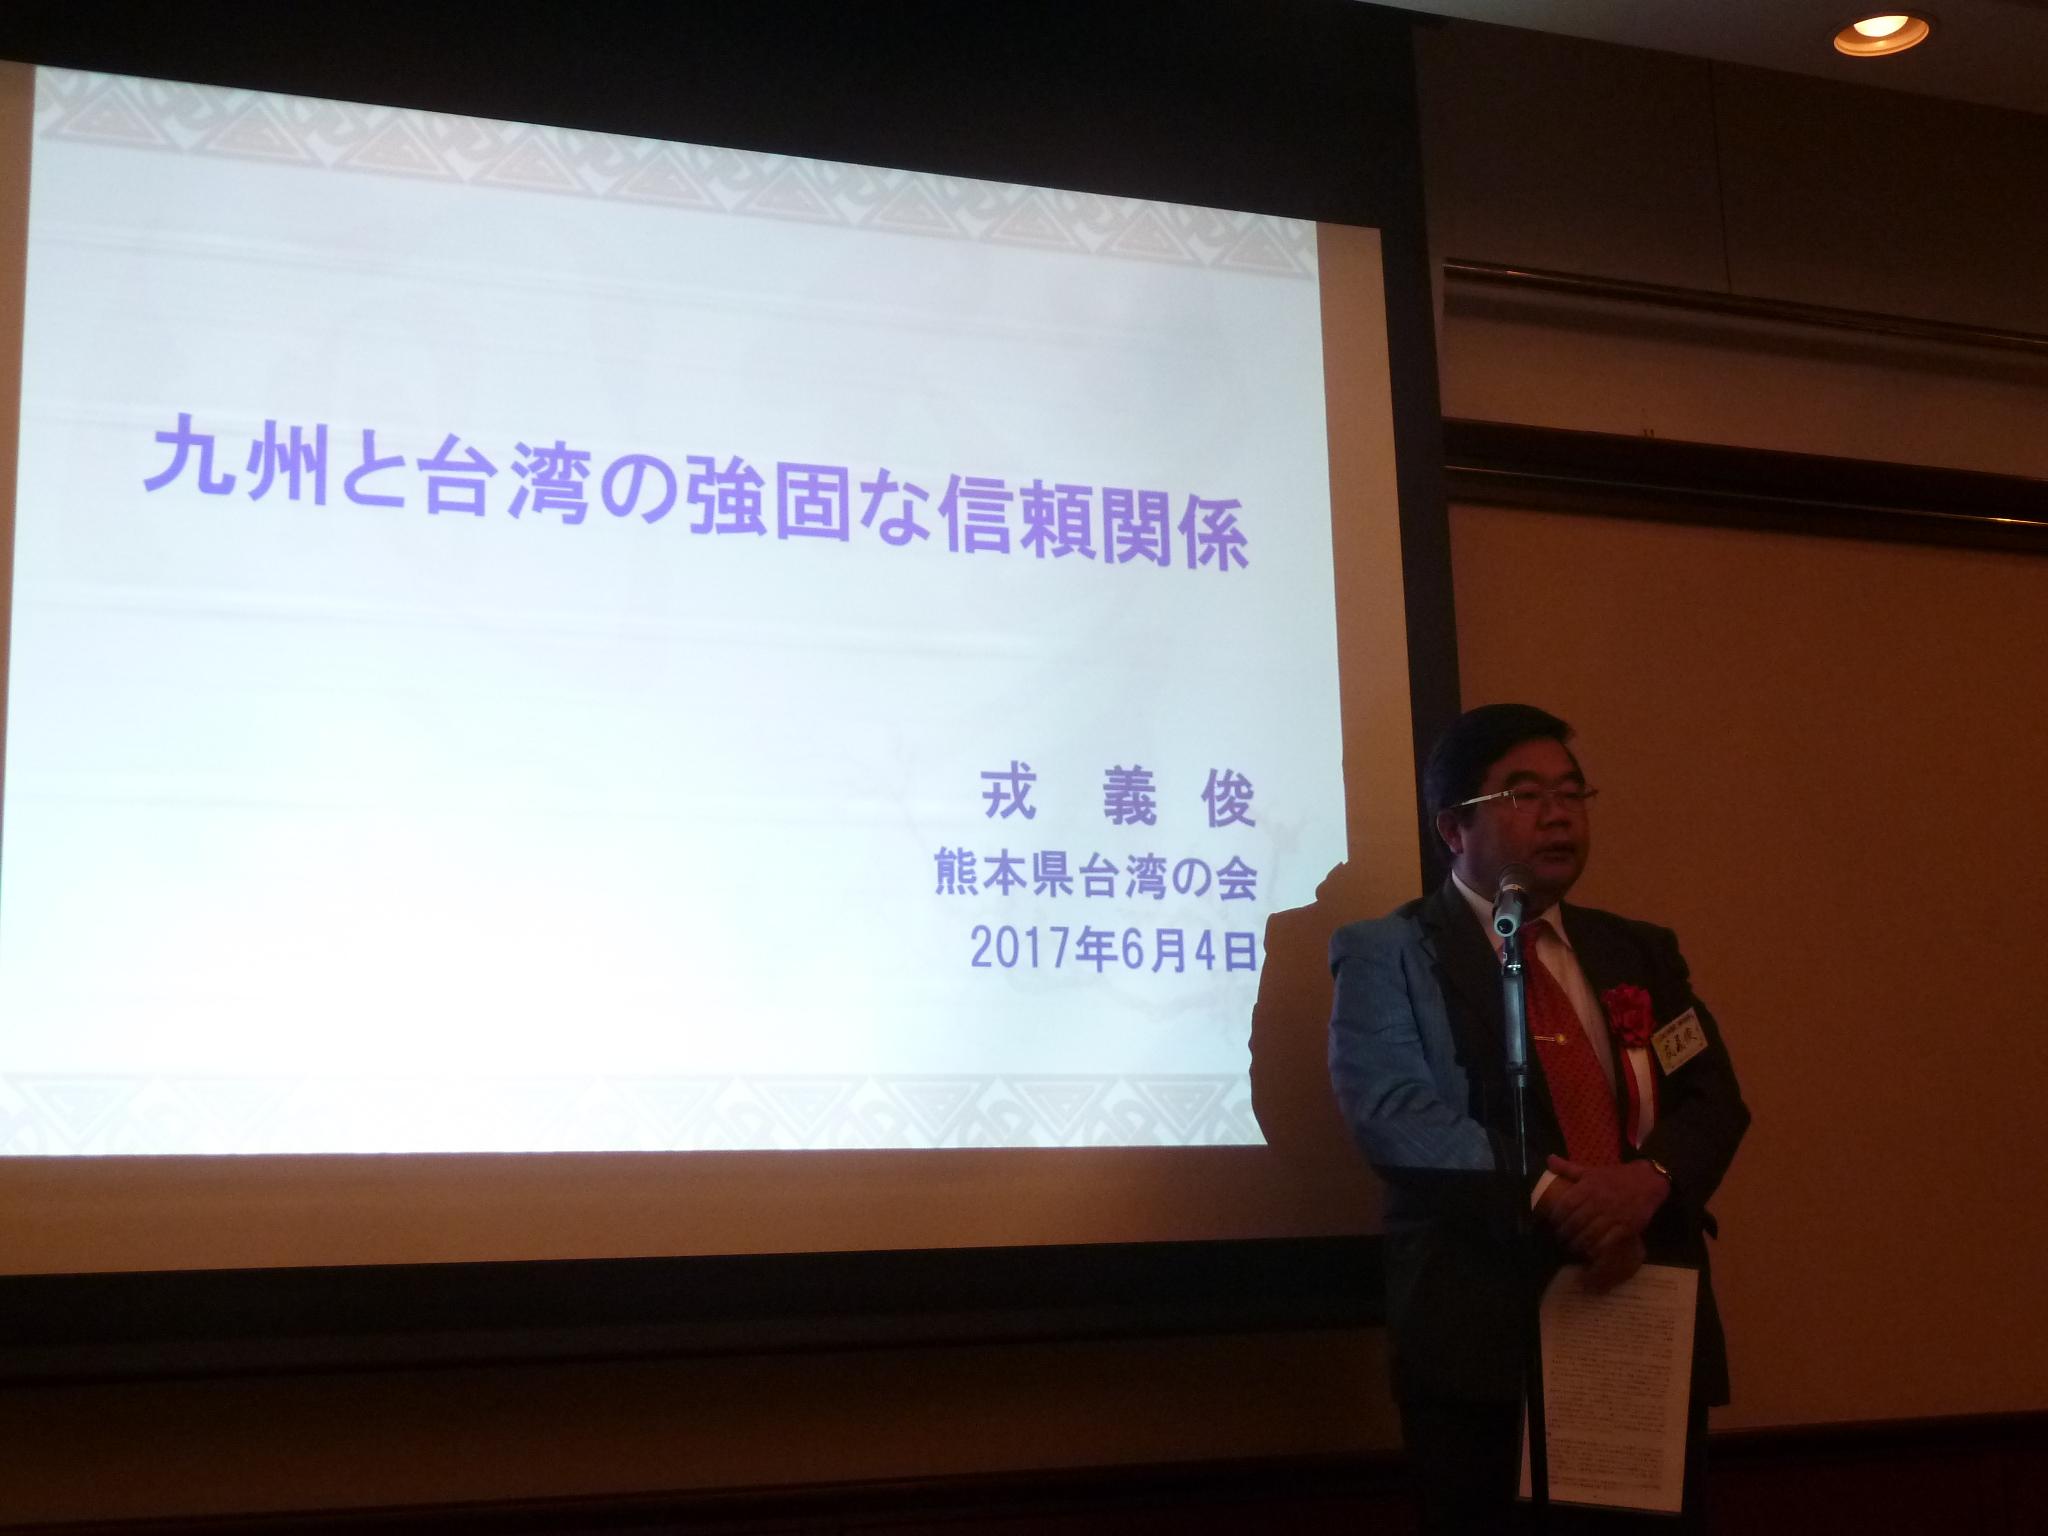 6月4日、戎総領事が「第31回熊本県台湾の会」に出席、「九州と台湾強固な信頼関係」を題として演説した。